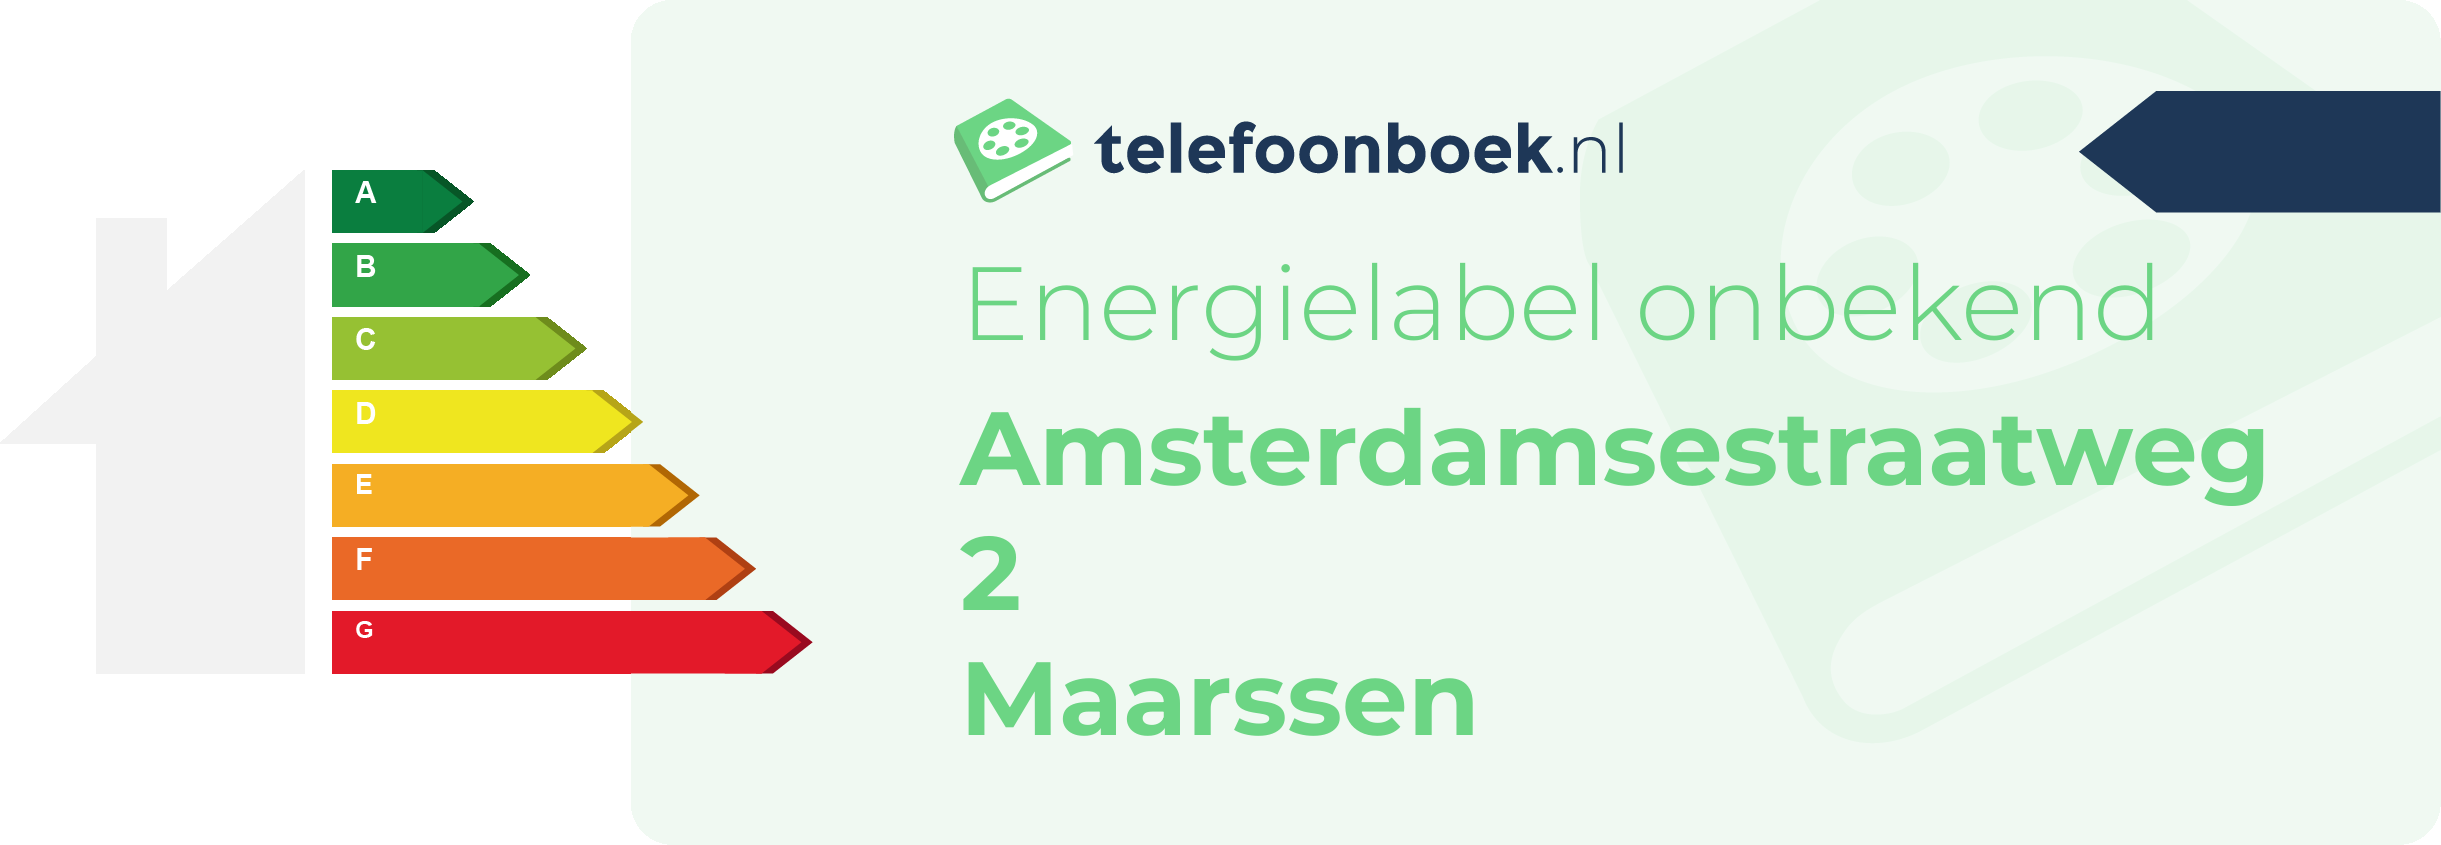 Energielabel Amsterdamsestraatweg 2 Maarssen